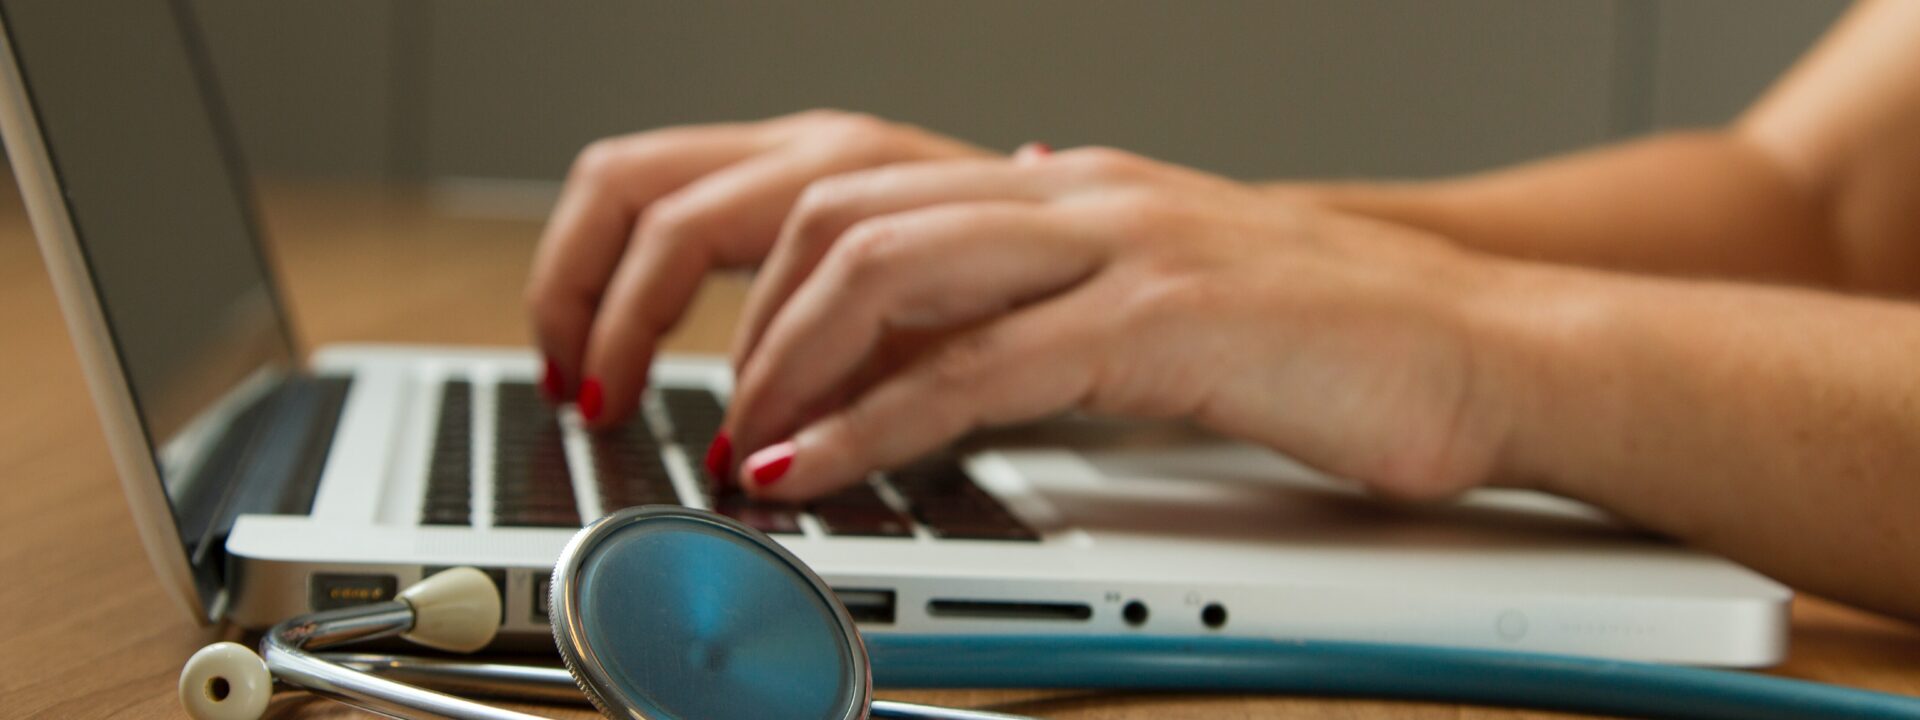 medecin tapant au clavier d'un macbook devant un stétoscope bleu